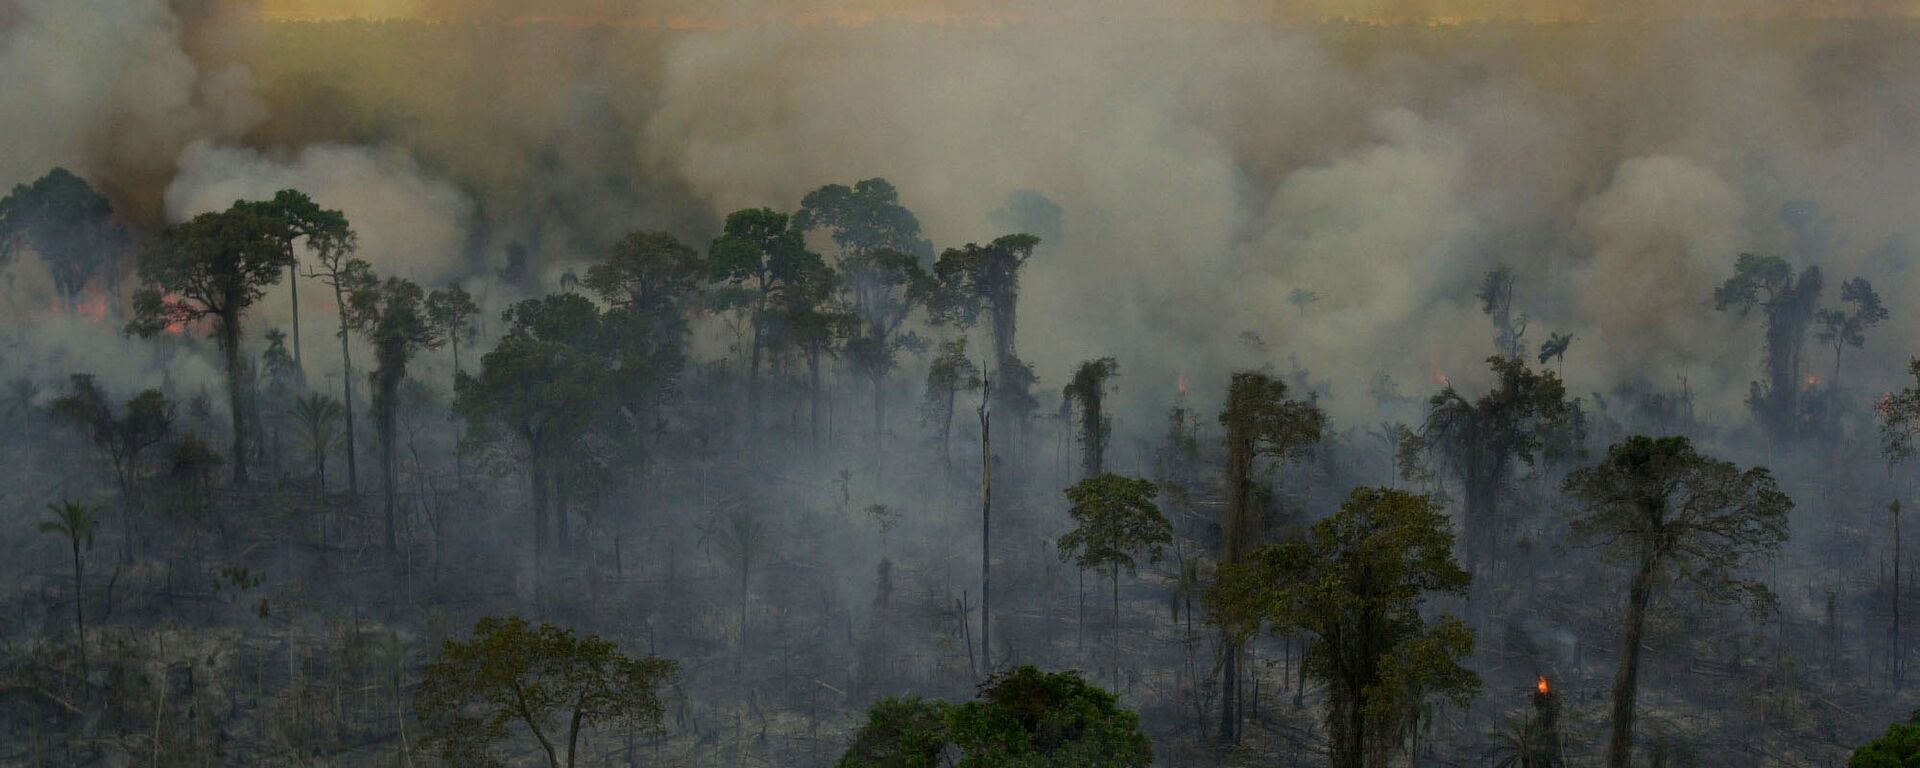 Incendios forestales en la Amazonía brasileña (archivo) - Sputnik Mundo, 1920, 01.07.2021